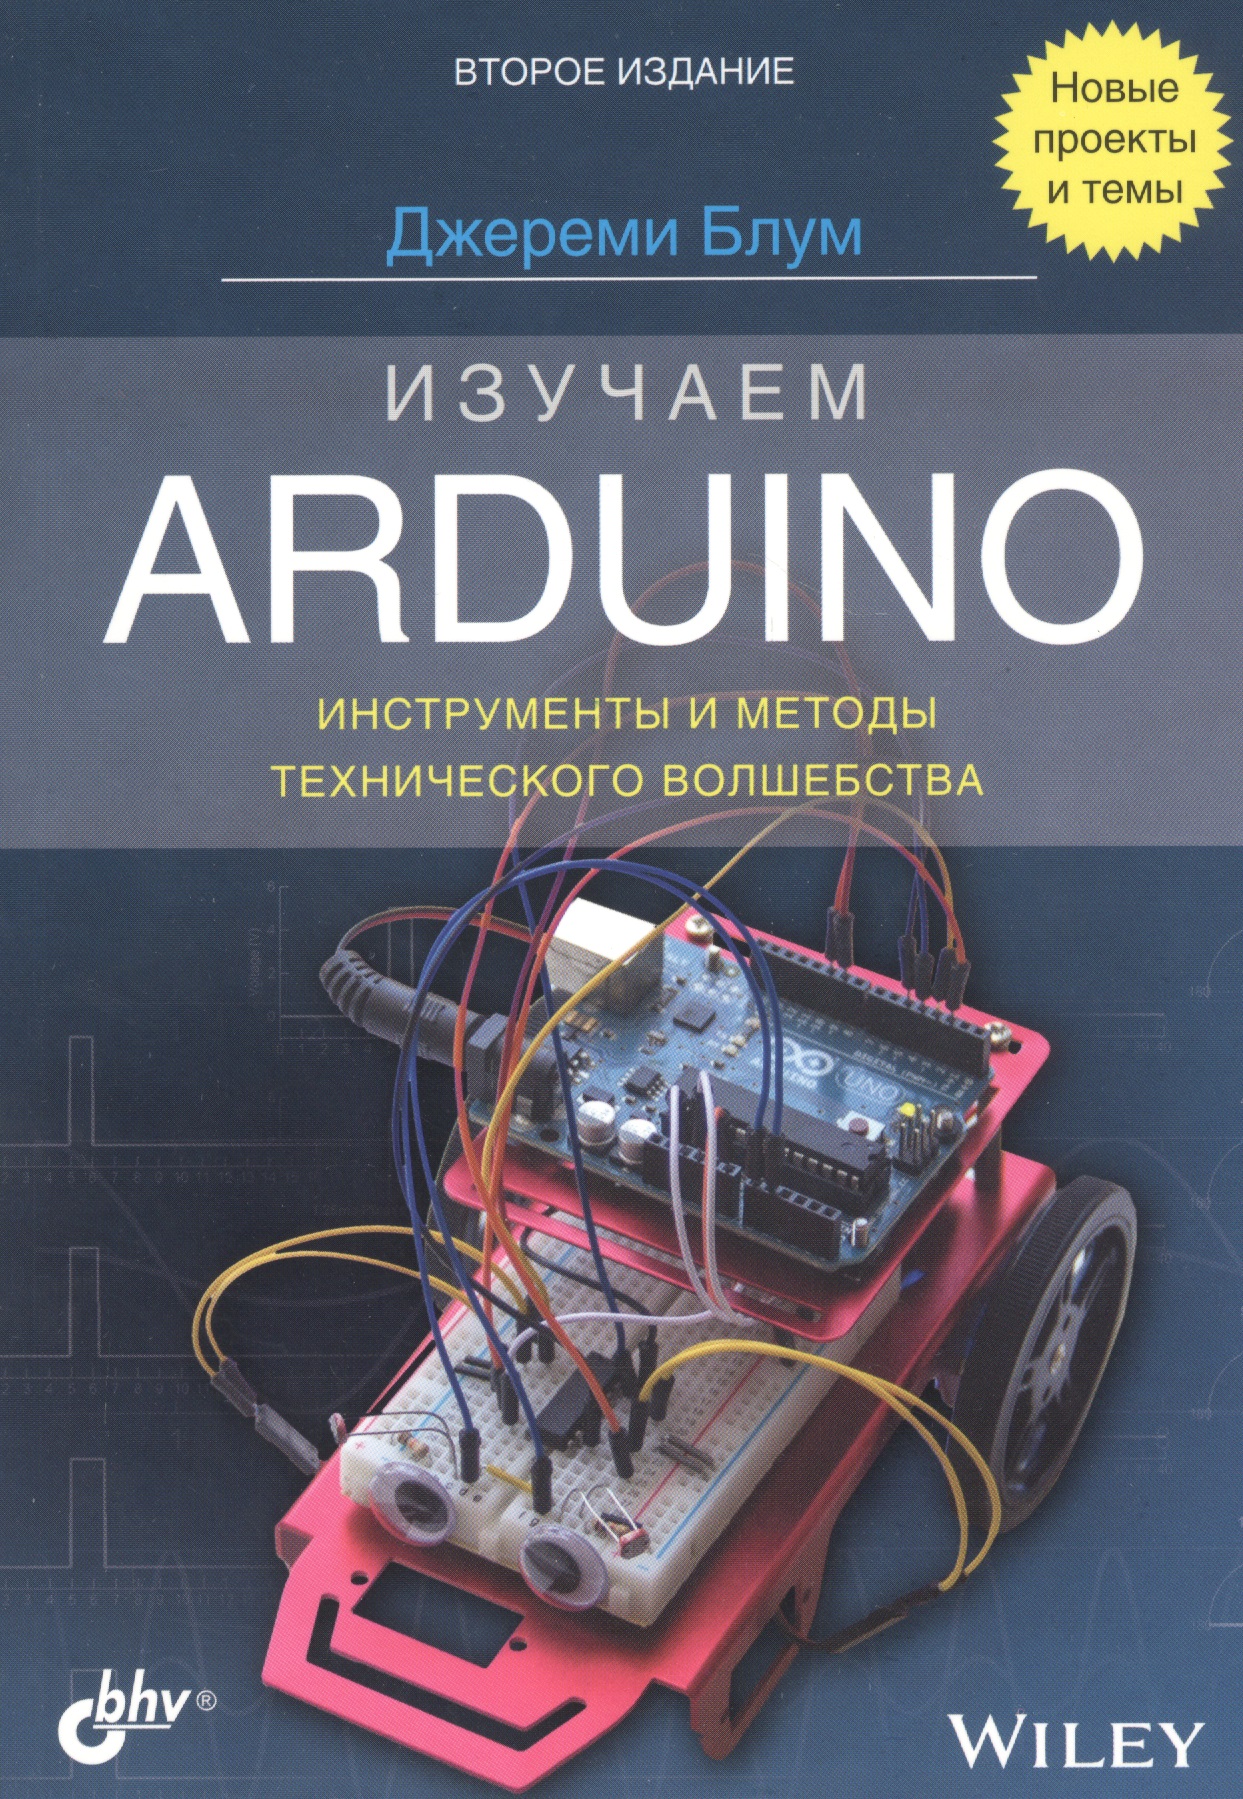 Изучаем Arduino: инструменты и методы технического волшебства блум дж изучаем arduino® инструменты и методы технического волшебства